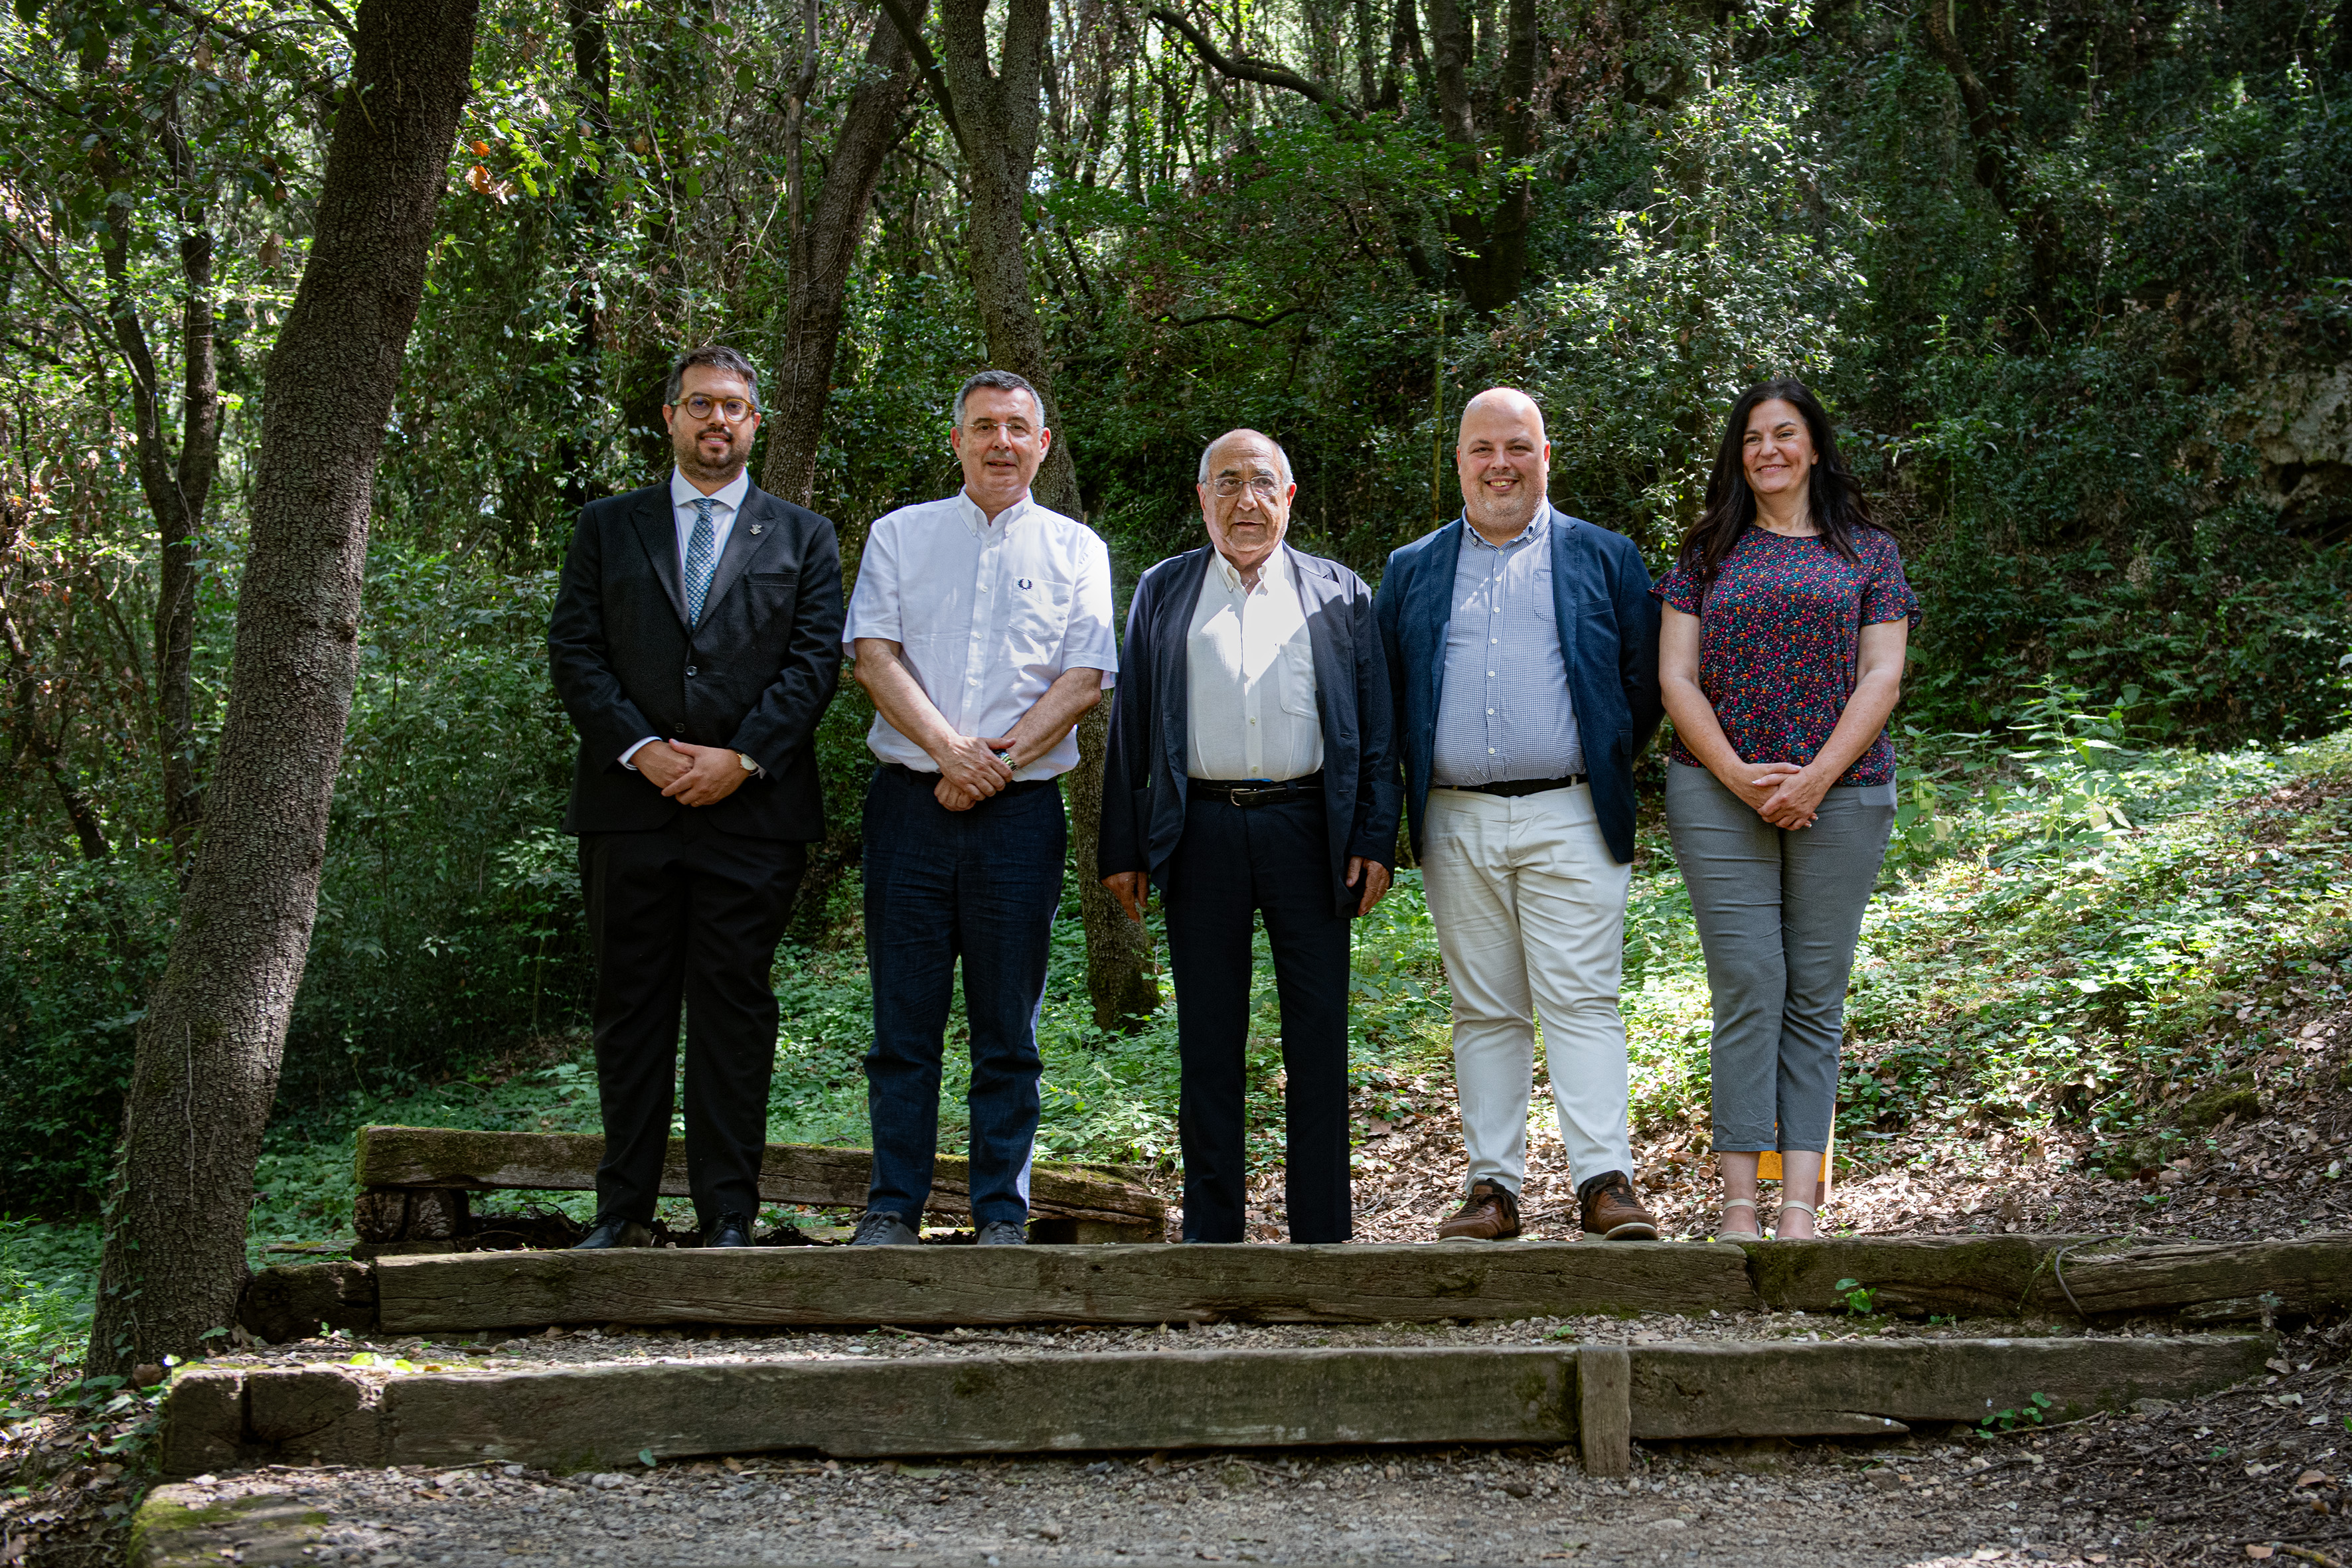 El conseller de Recerca i Universitats, Joaquim Nadal i Farreras, amb la resta d'autoritats assistents a l'acte institucional de reobertura de l'Arqueoparc Coves de Serinyà